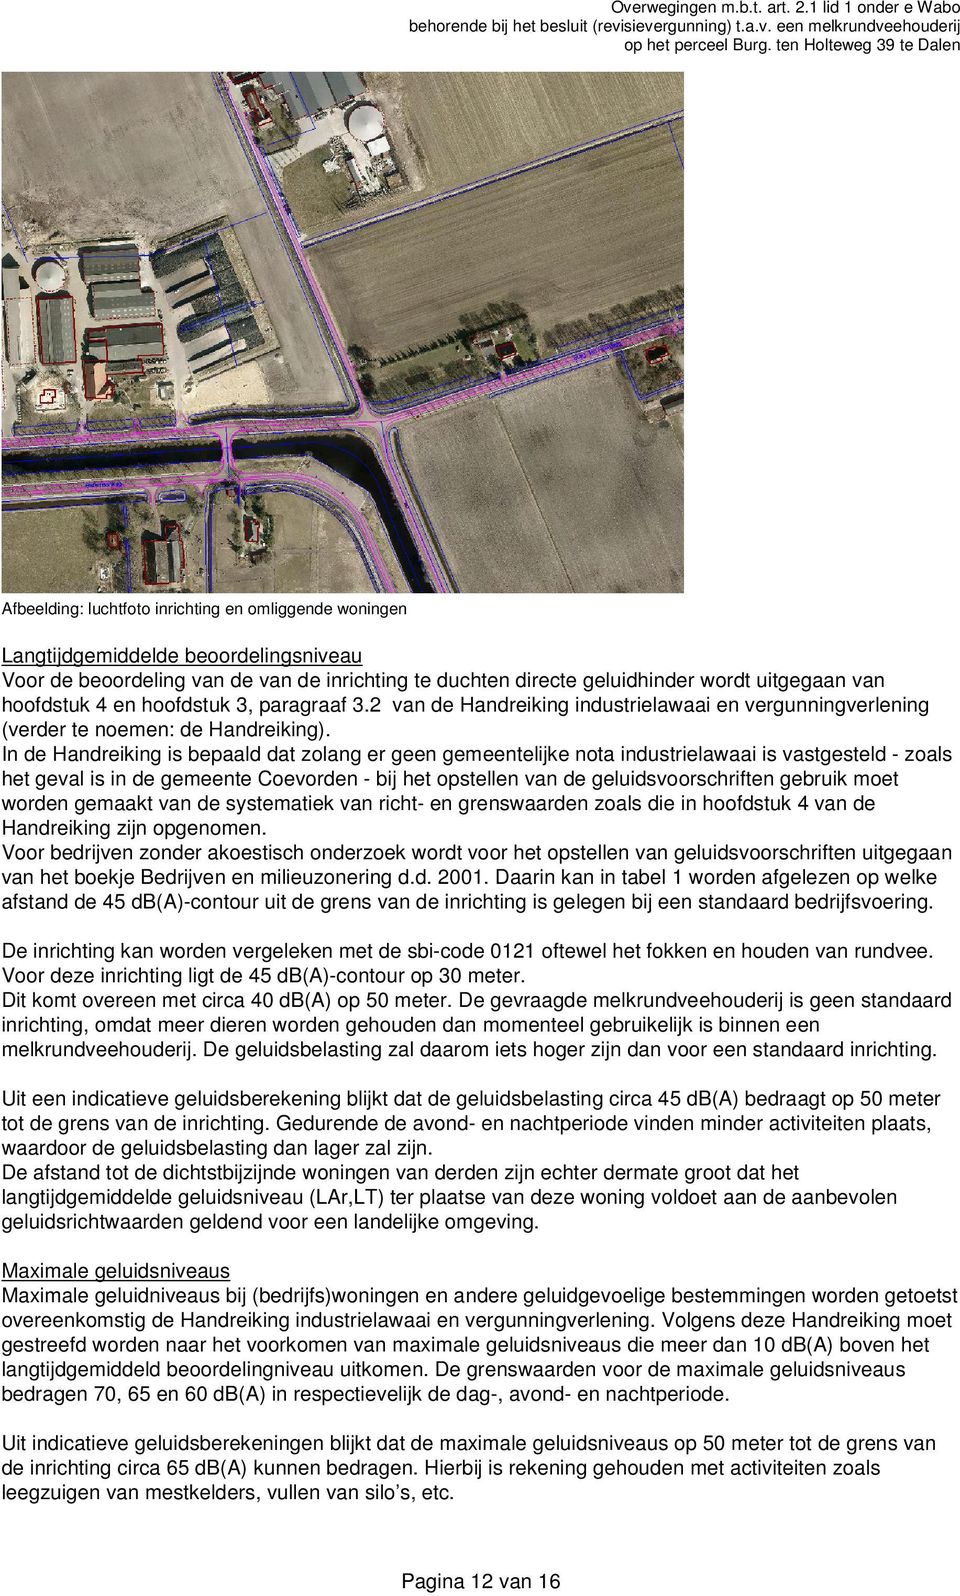 In de Handreiking is bepaald dat zolang er geen gemeentelijke nota industrielawaai is vastgesteld - zoals het geval is in de gemeente Coevorden - bij het opstellen van de geluidsvoorschriften gebruik